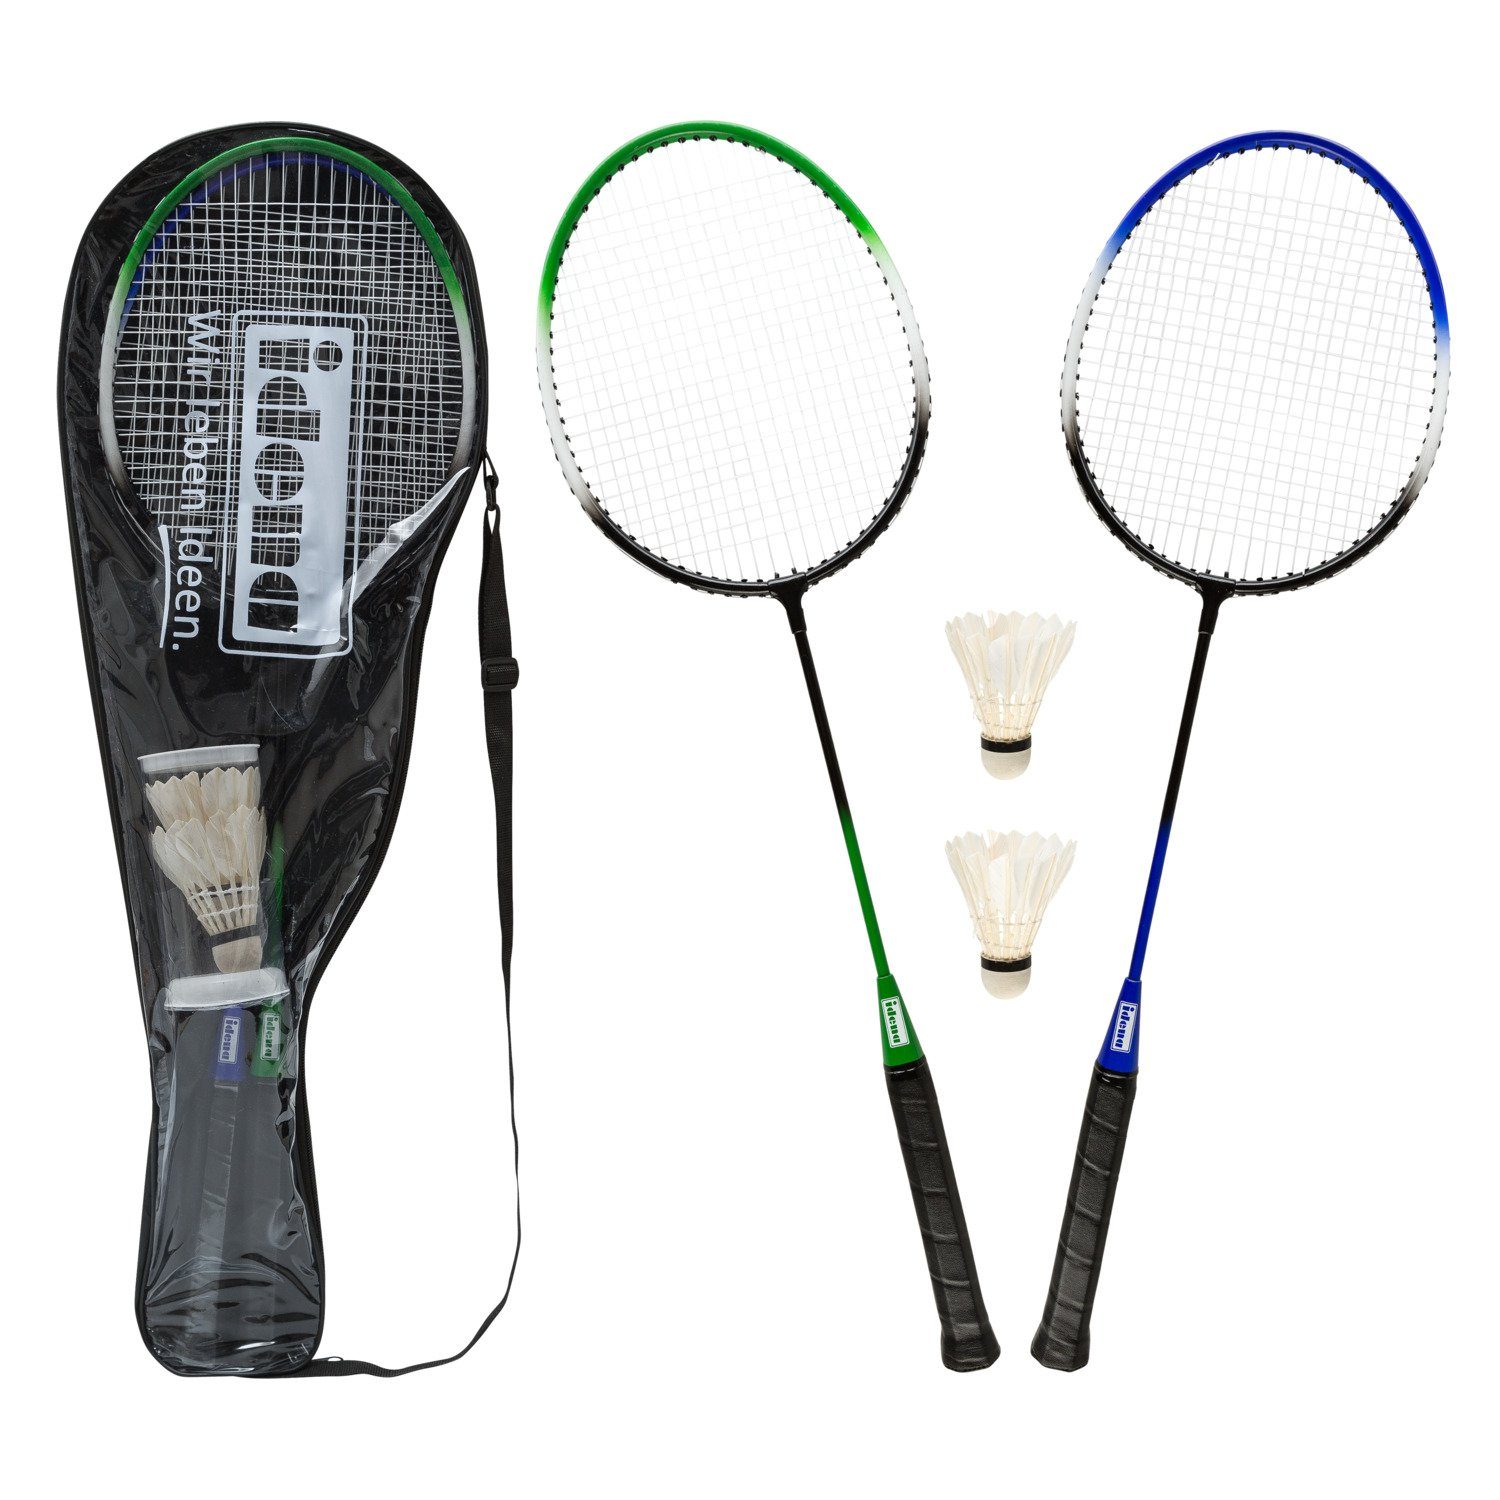 Idena Badmintonschläger Idena 40190 - Badminton Set mit 2 Schlägern und 2 Federbällen in prakt, (Set) | Schläger